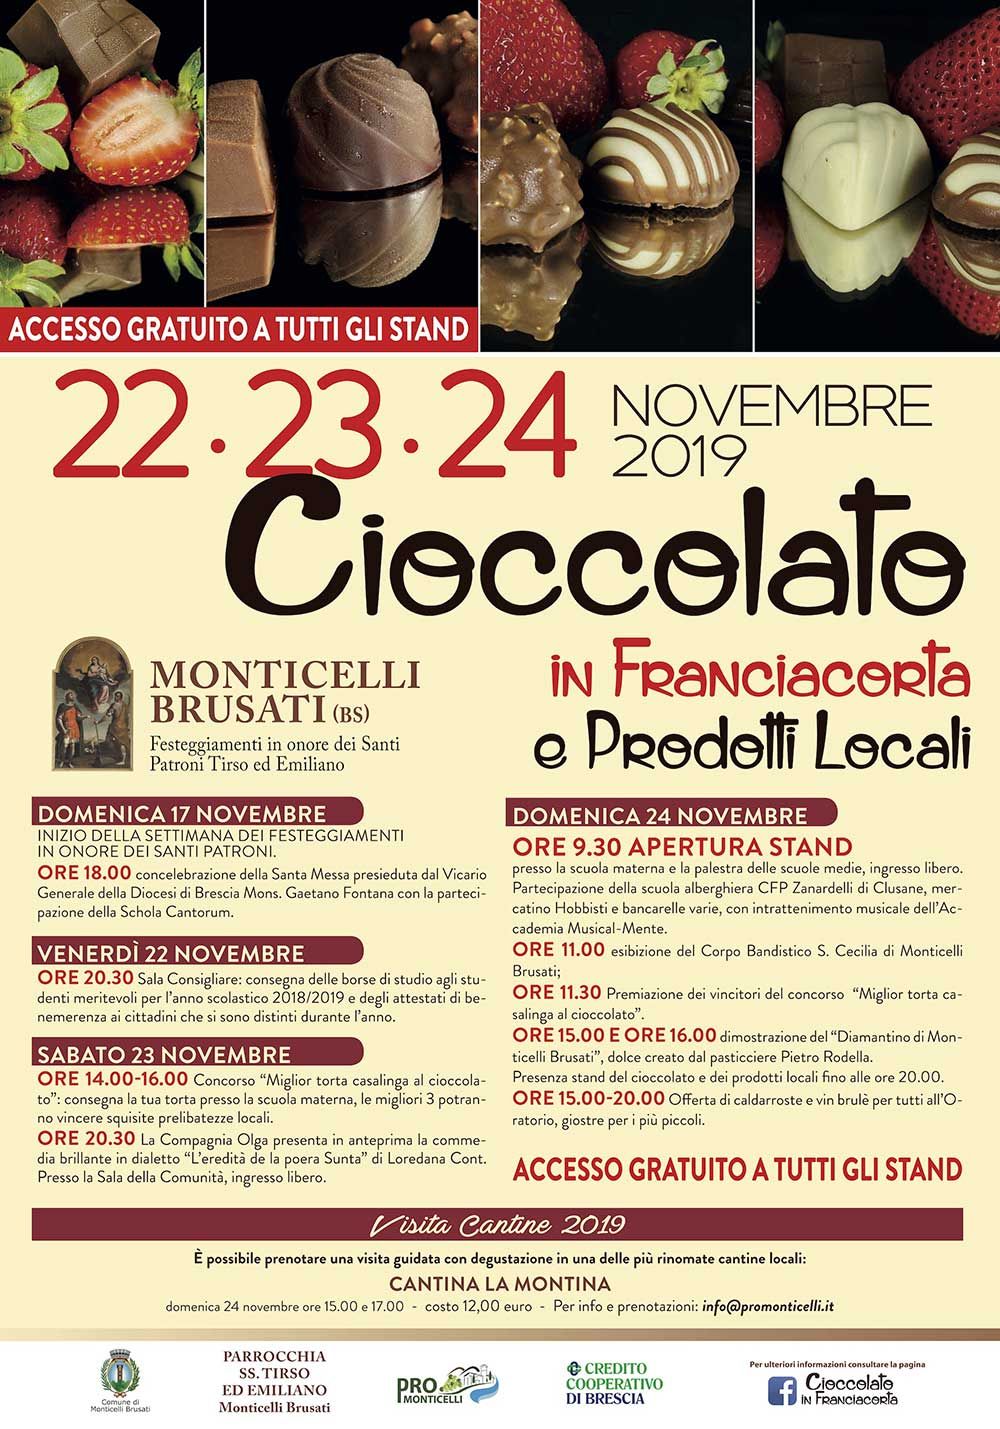 Monticelli-Cioccolato-franciacorta-2019